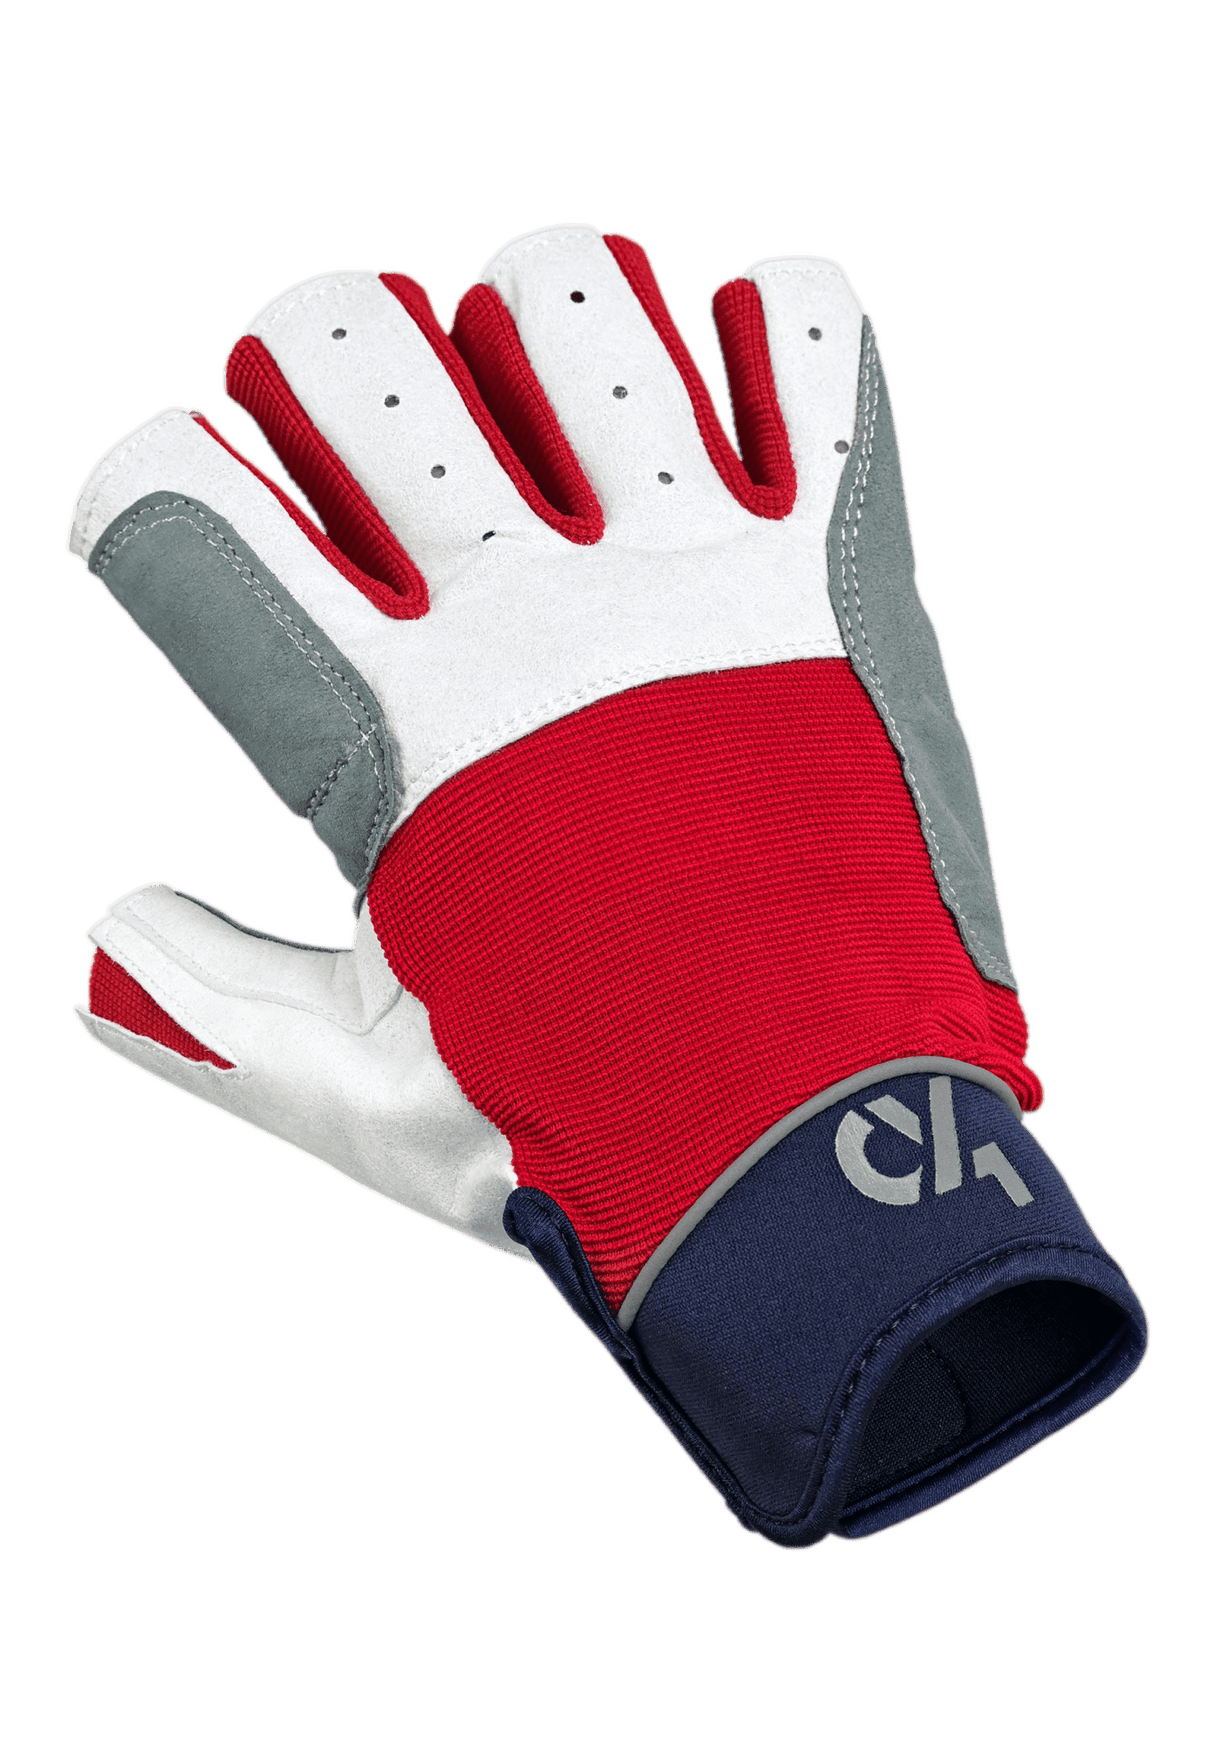 Unisex Segelhandschuhe Regatta Handschuhe Crazy4Sailing 